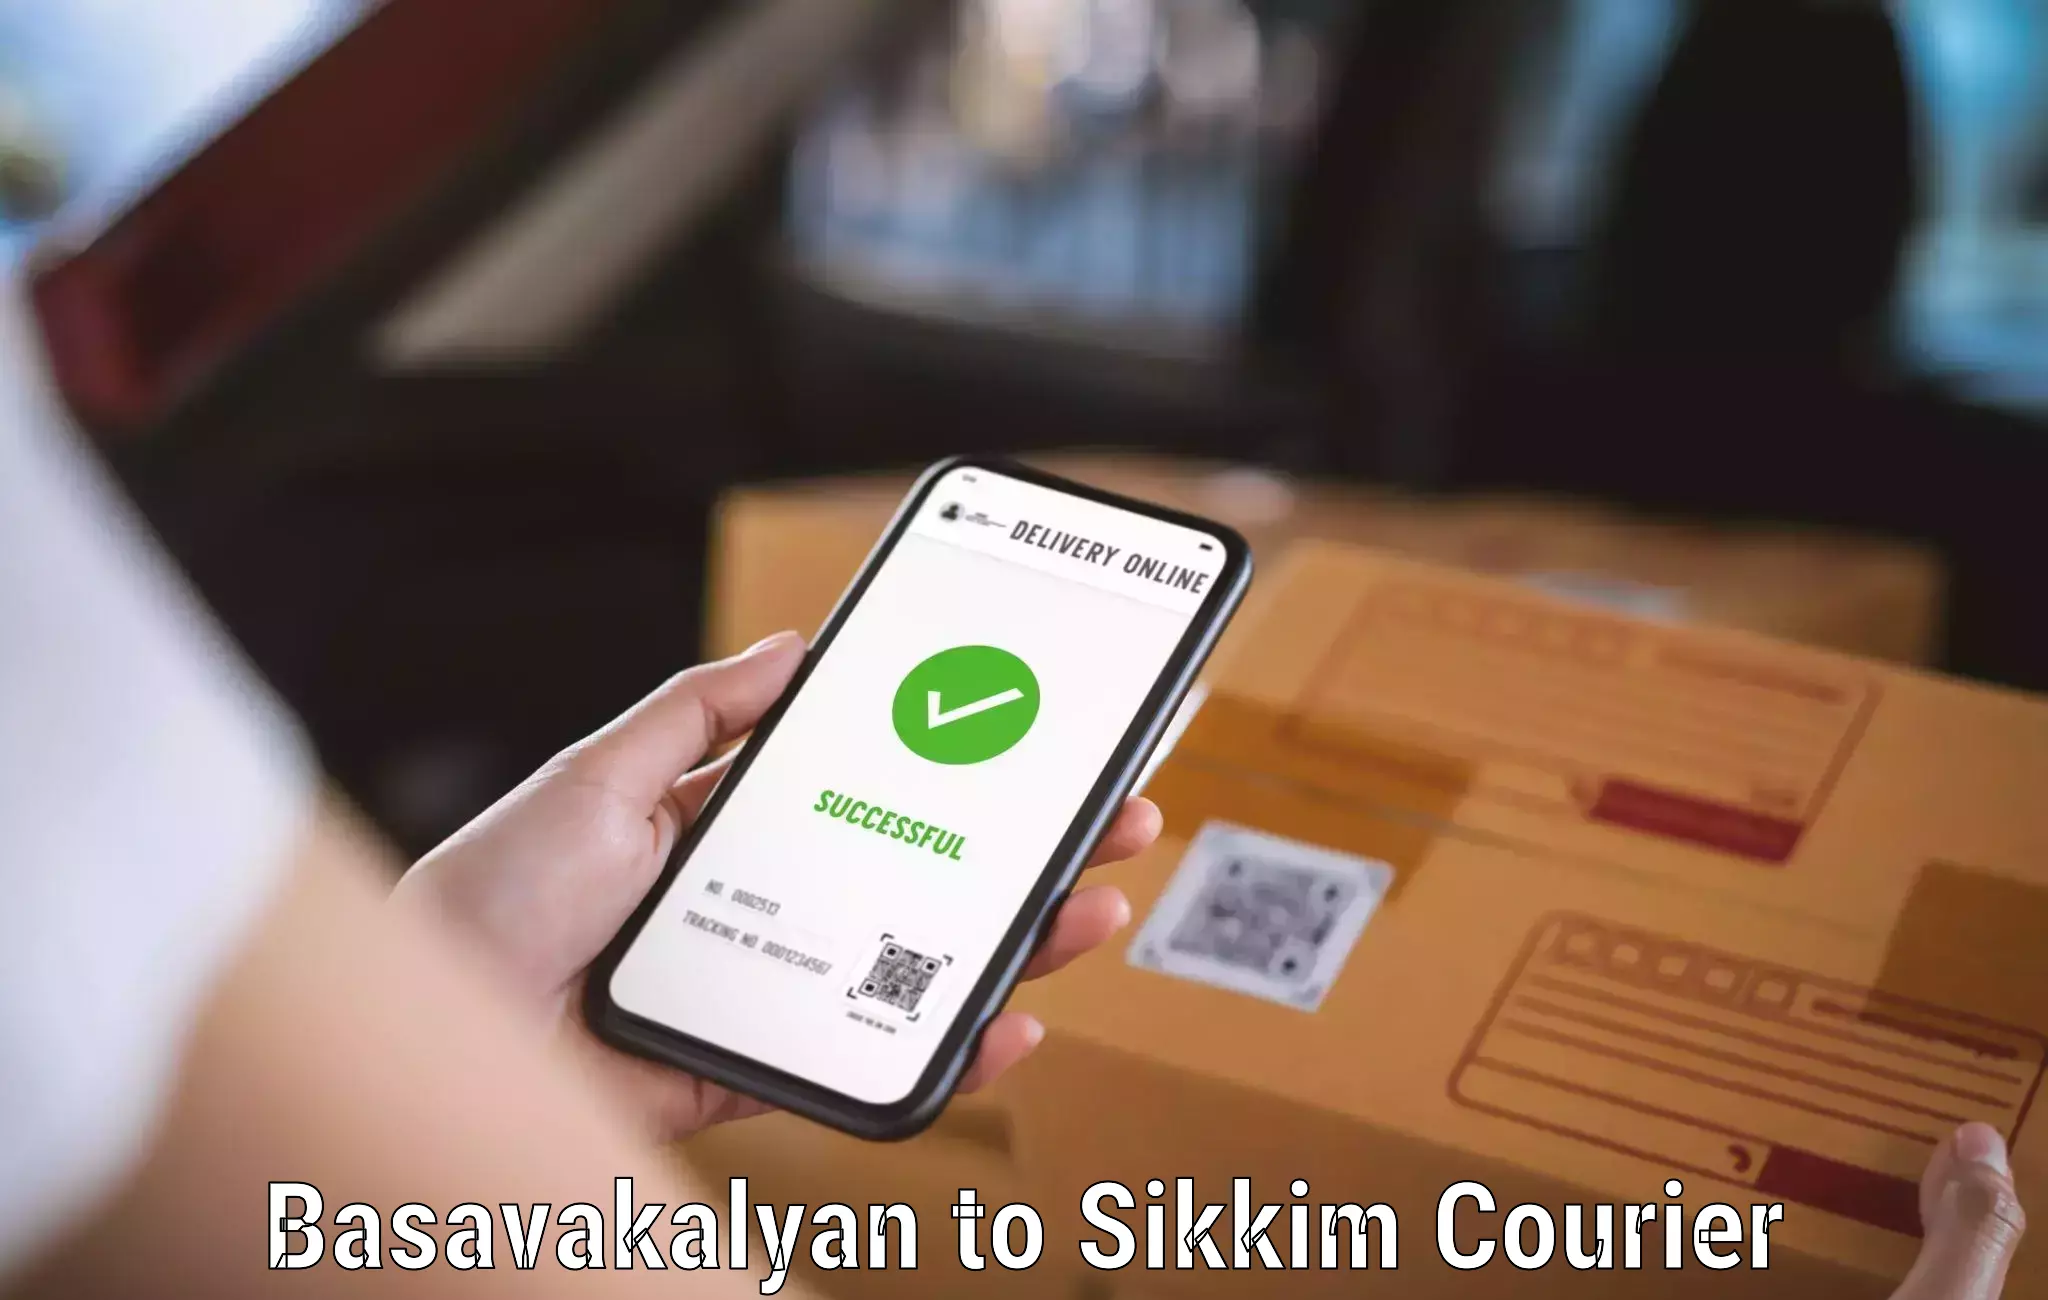 High-priority parcel service Basavakalyan to NIT Sikkim